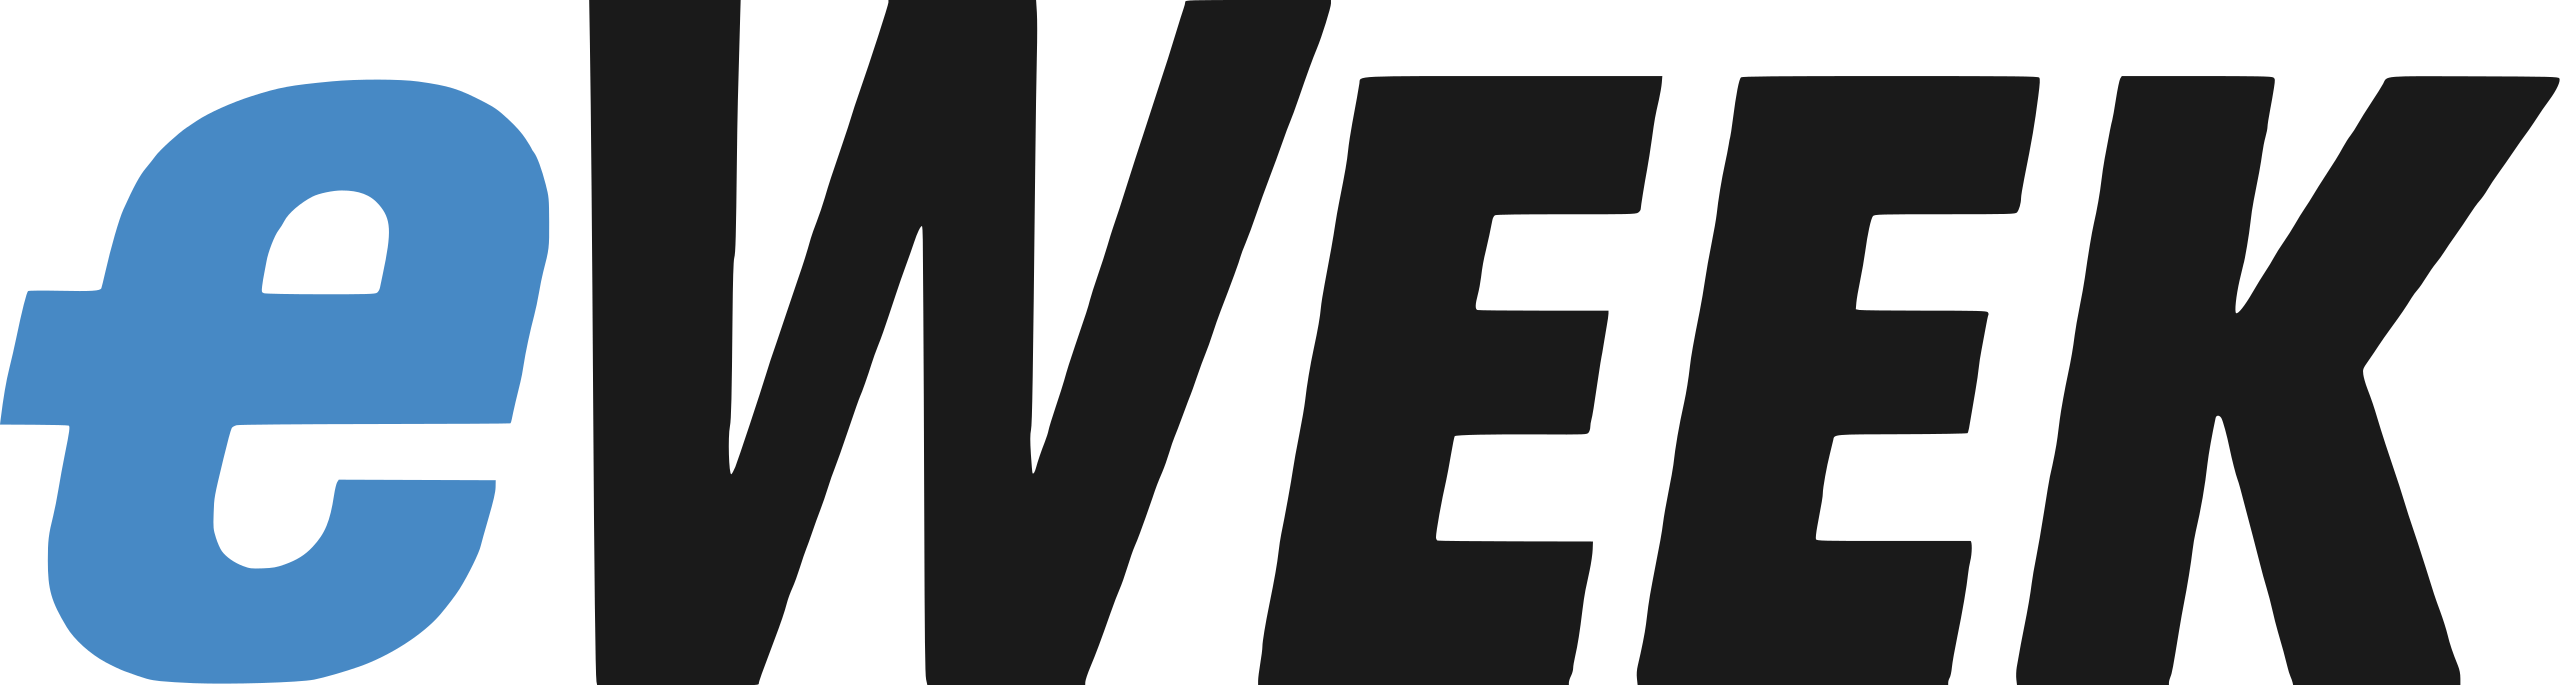 eweek Logo